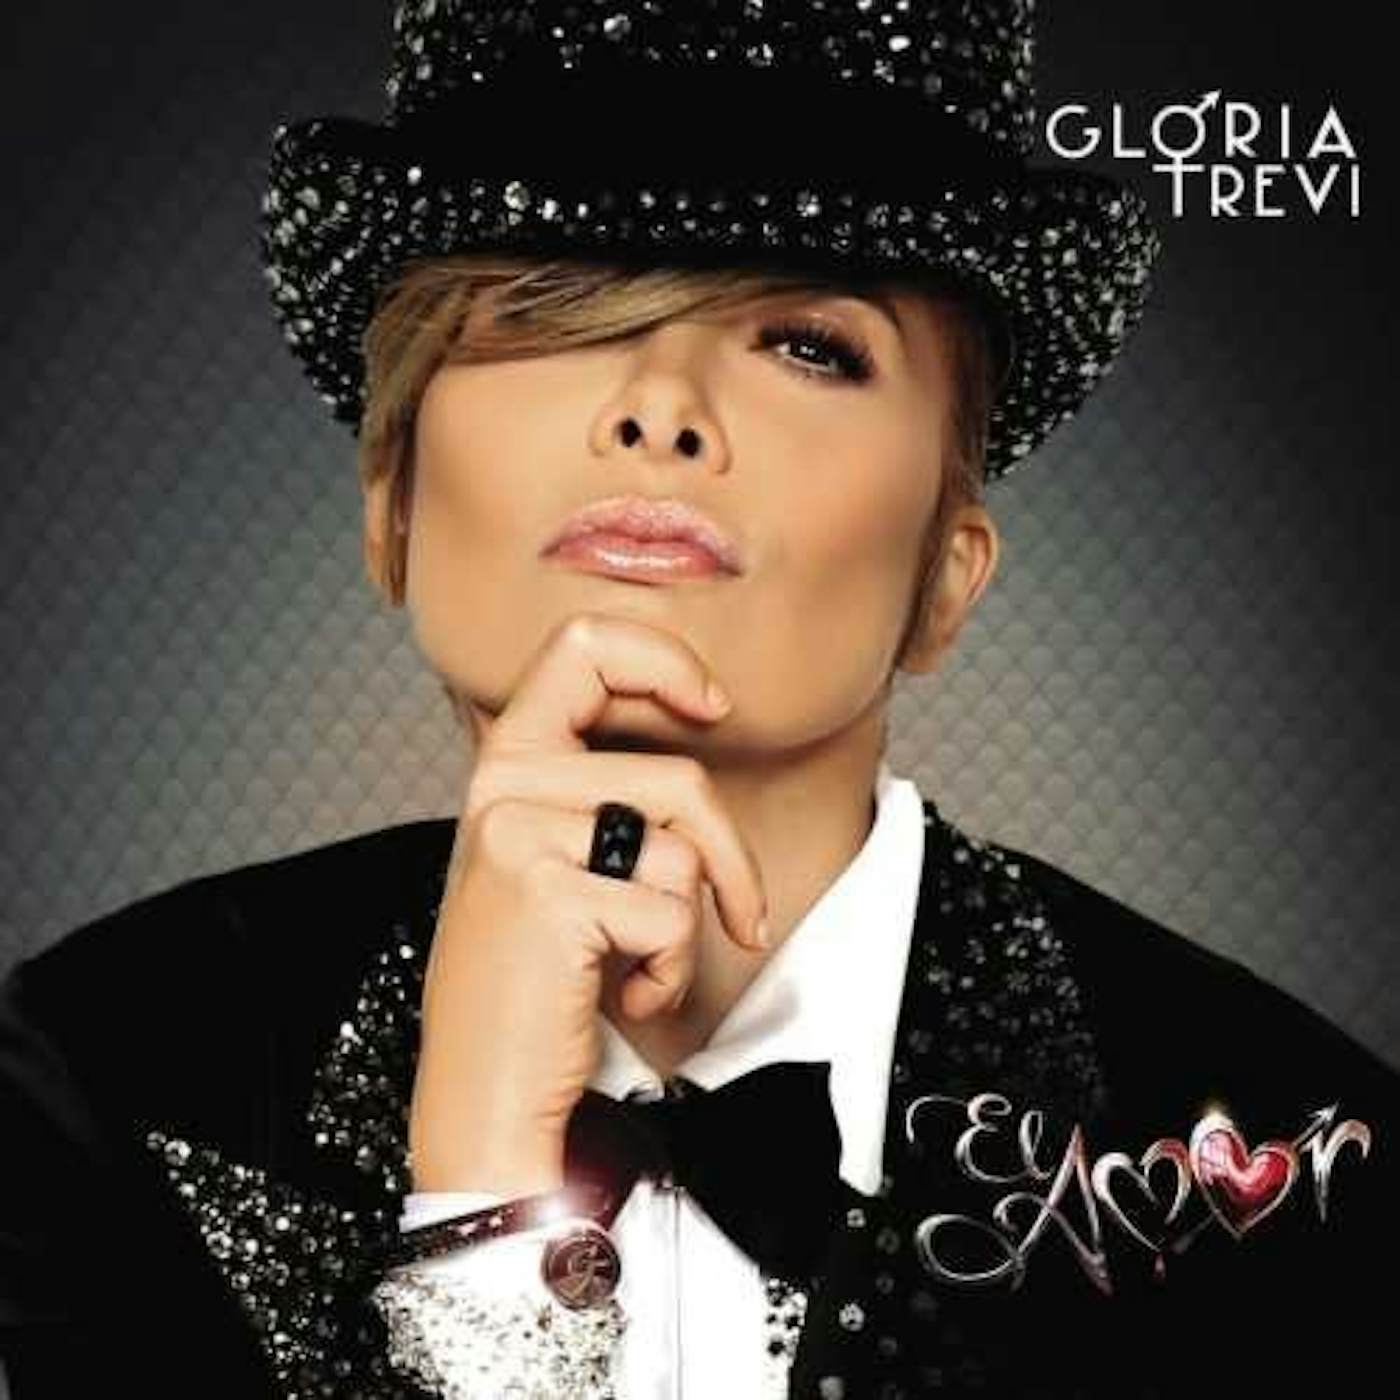 Gloria Trevi EL AMOR Vinyl Record - Deluxe Edition